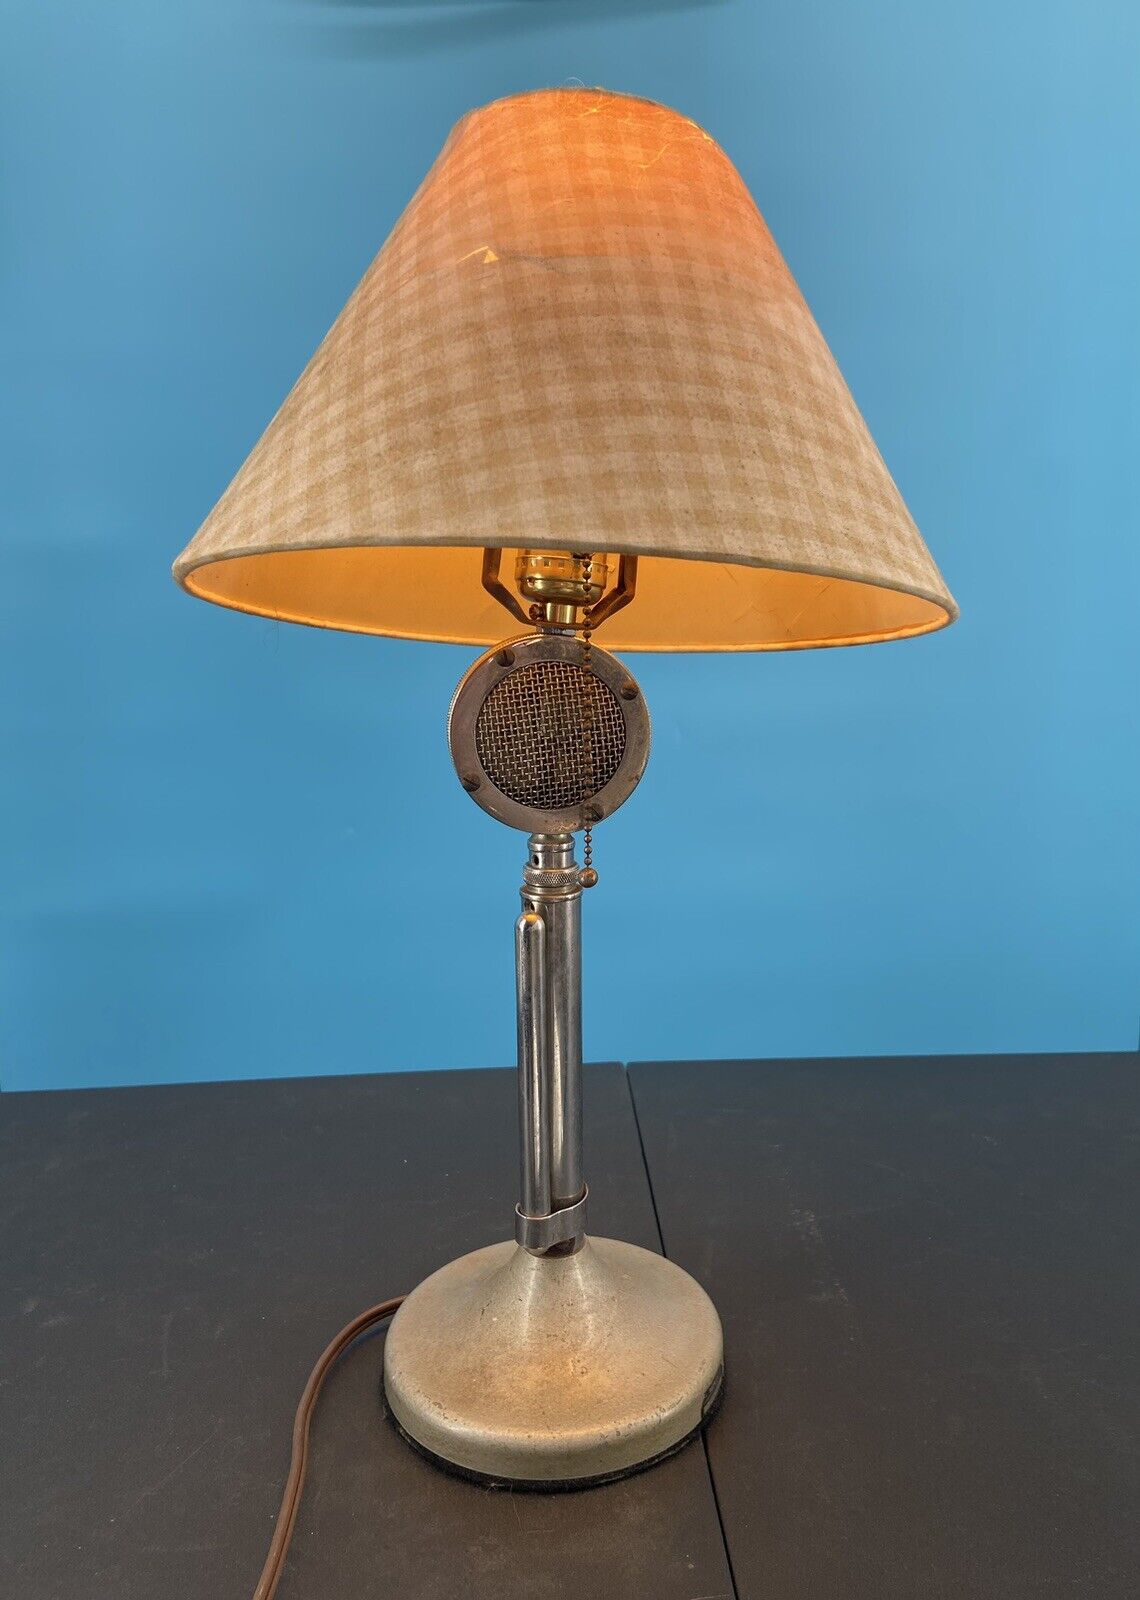 VINTAGE ASTATIC D-104 LOLLIPOP MICROPHONE LAMP